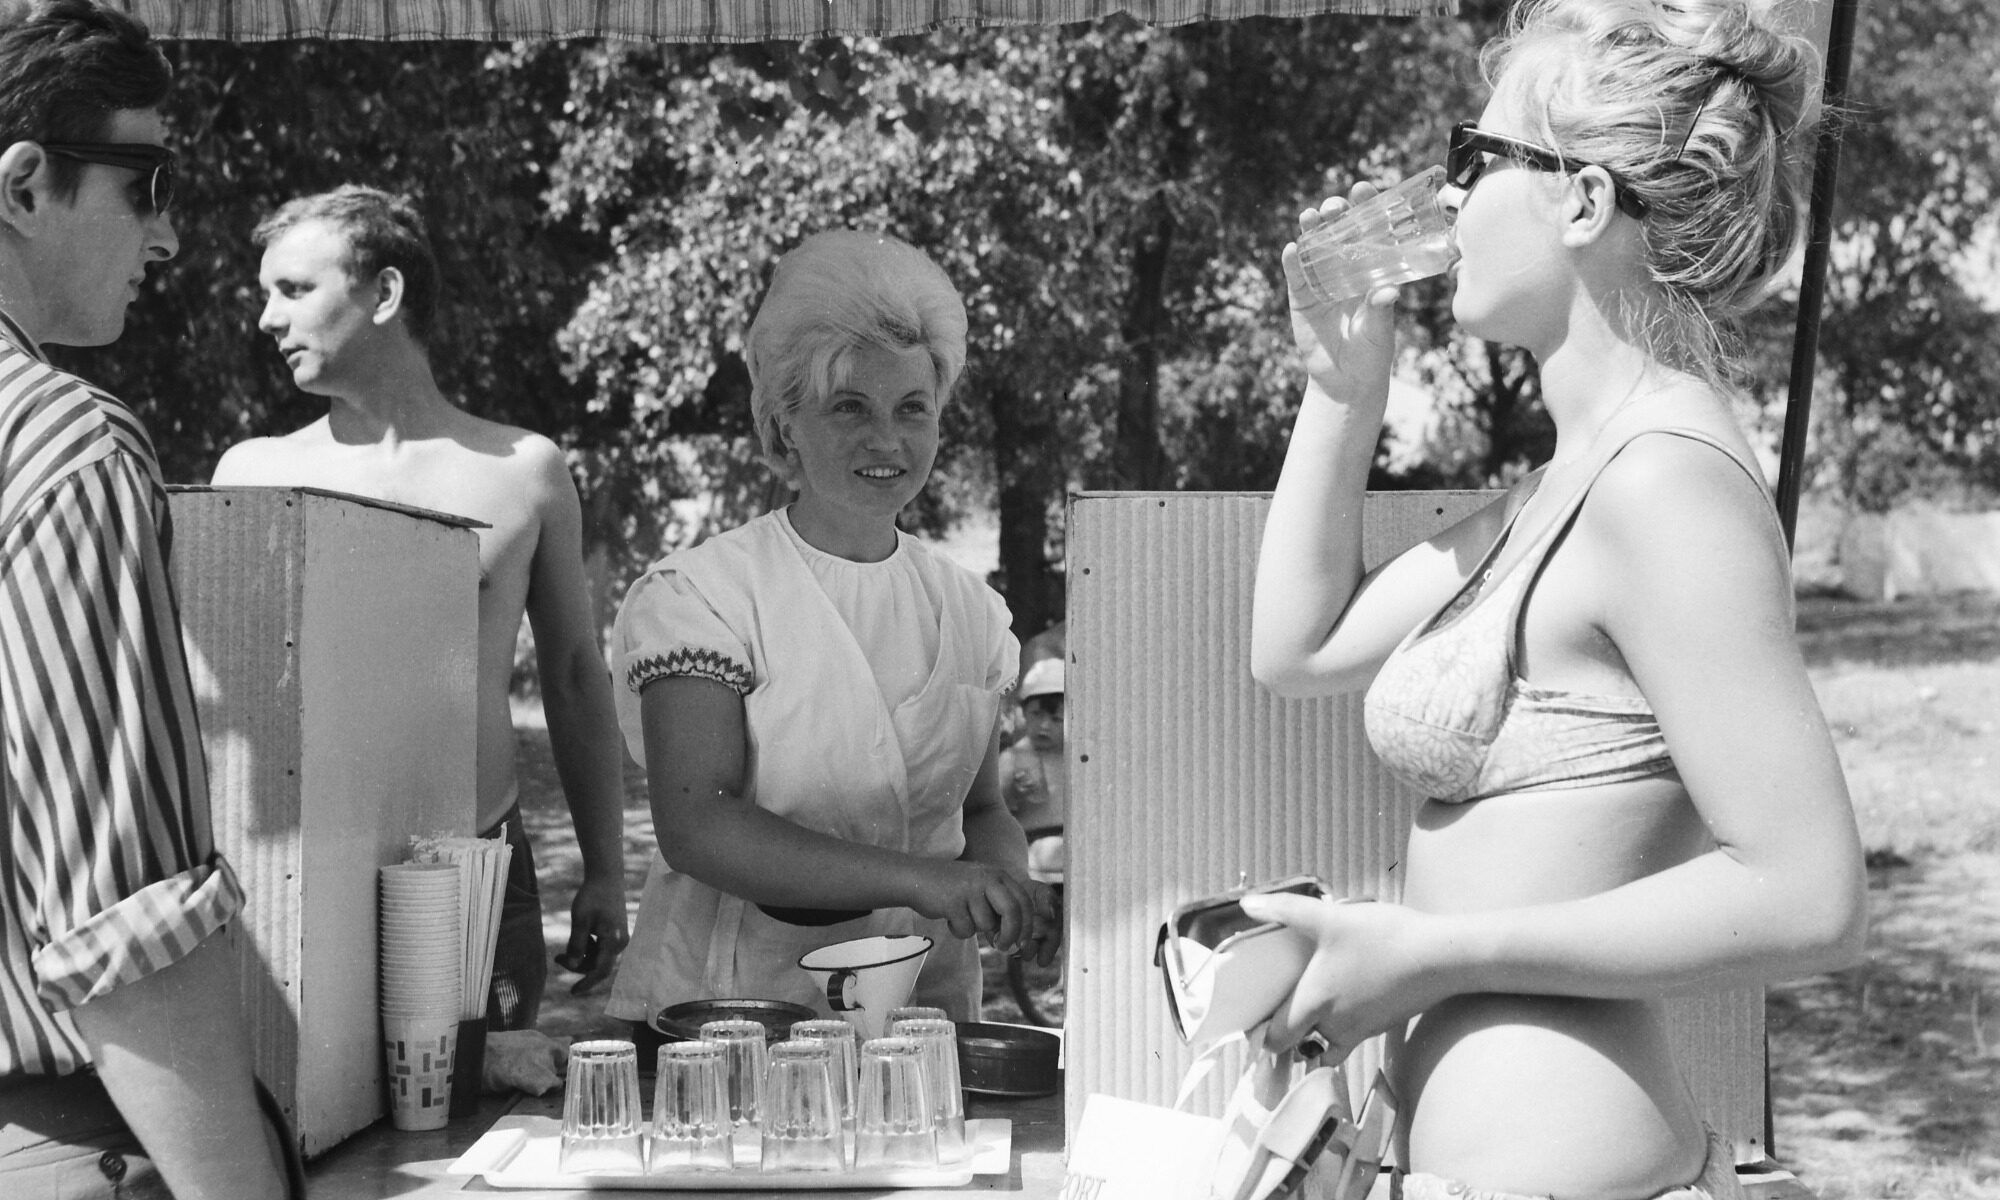 Vente de boissons gazéifiées sur une promenade, 1969.